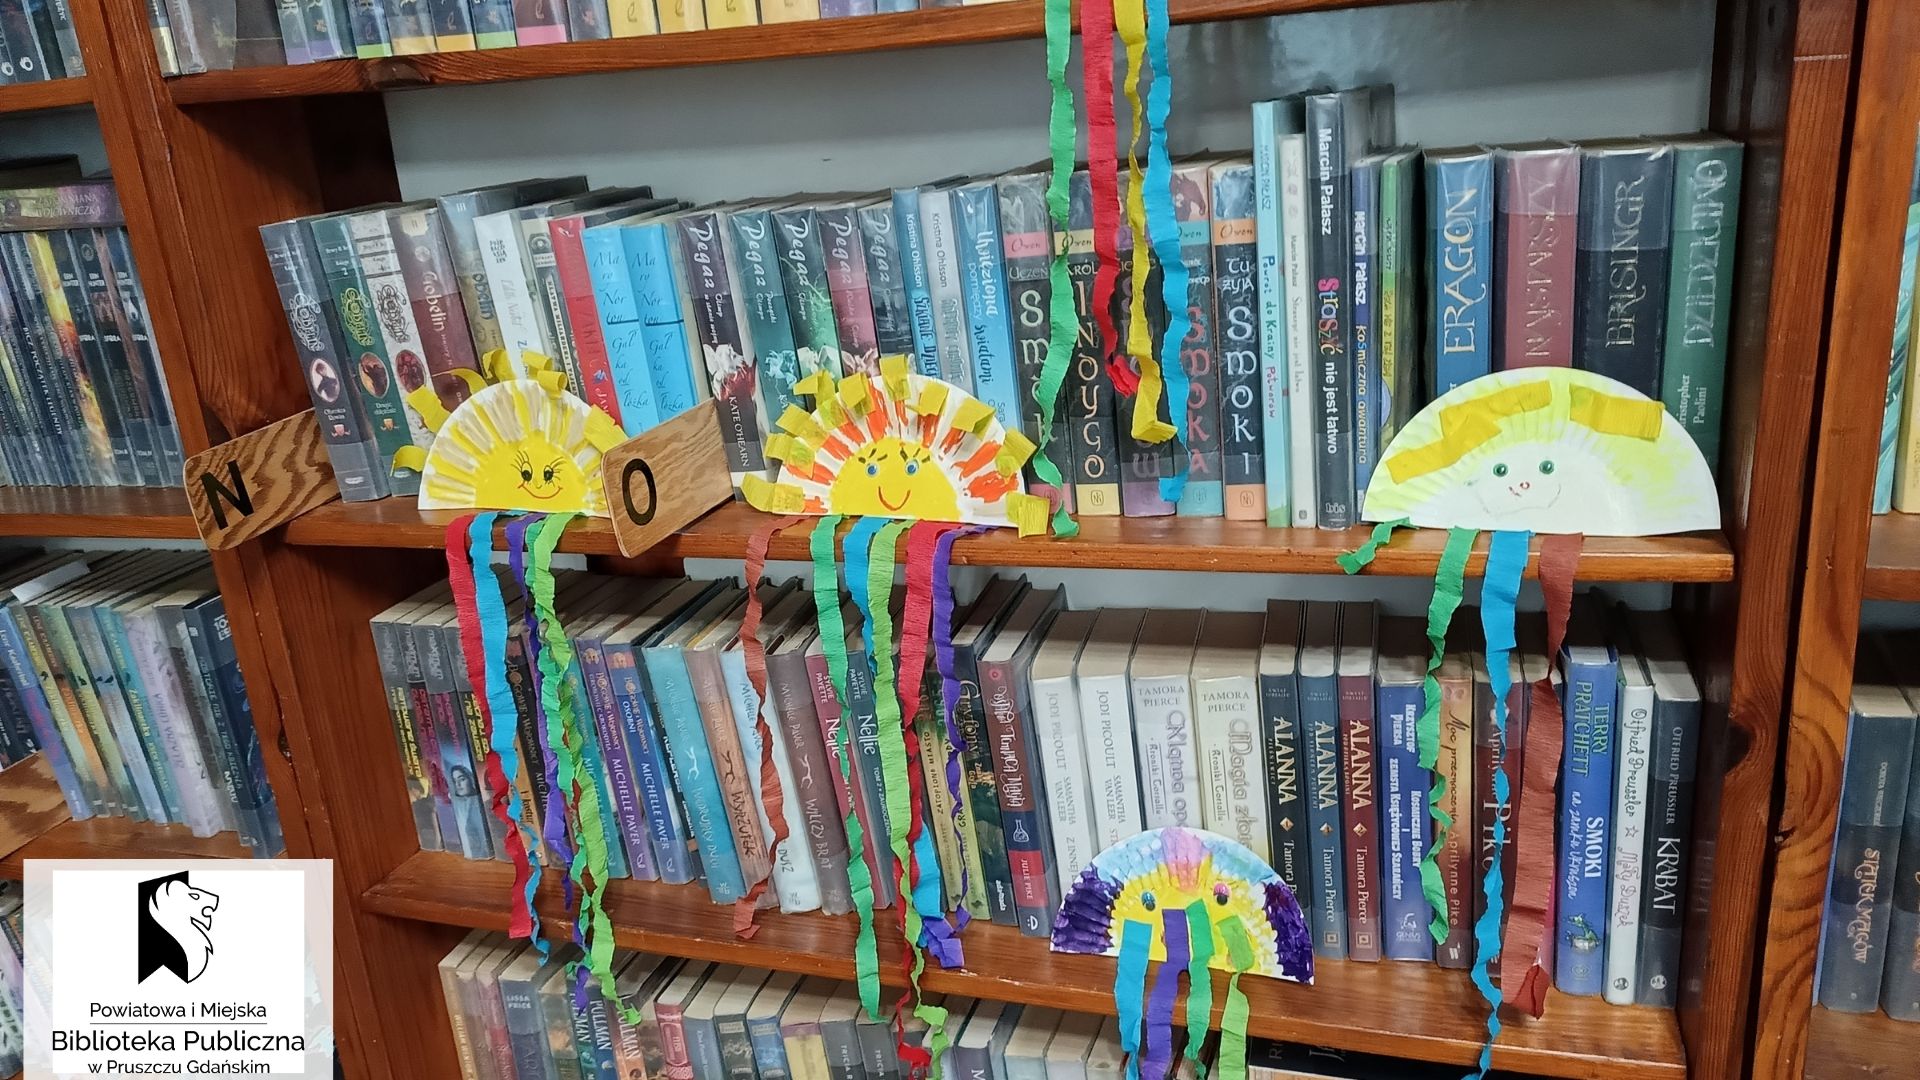 Prace plastyczne - słońca z papierowych talerzyków, ustawione na półkach z książkami.